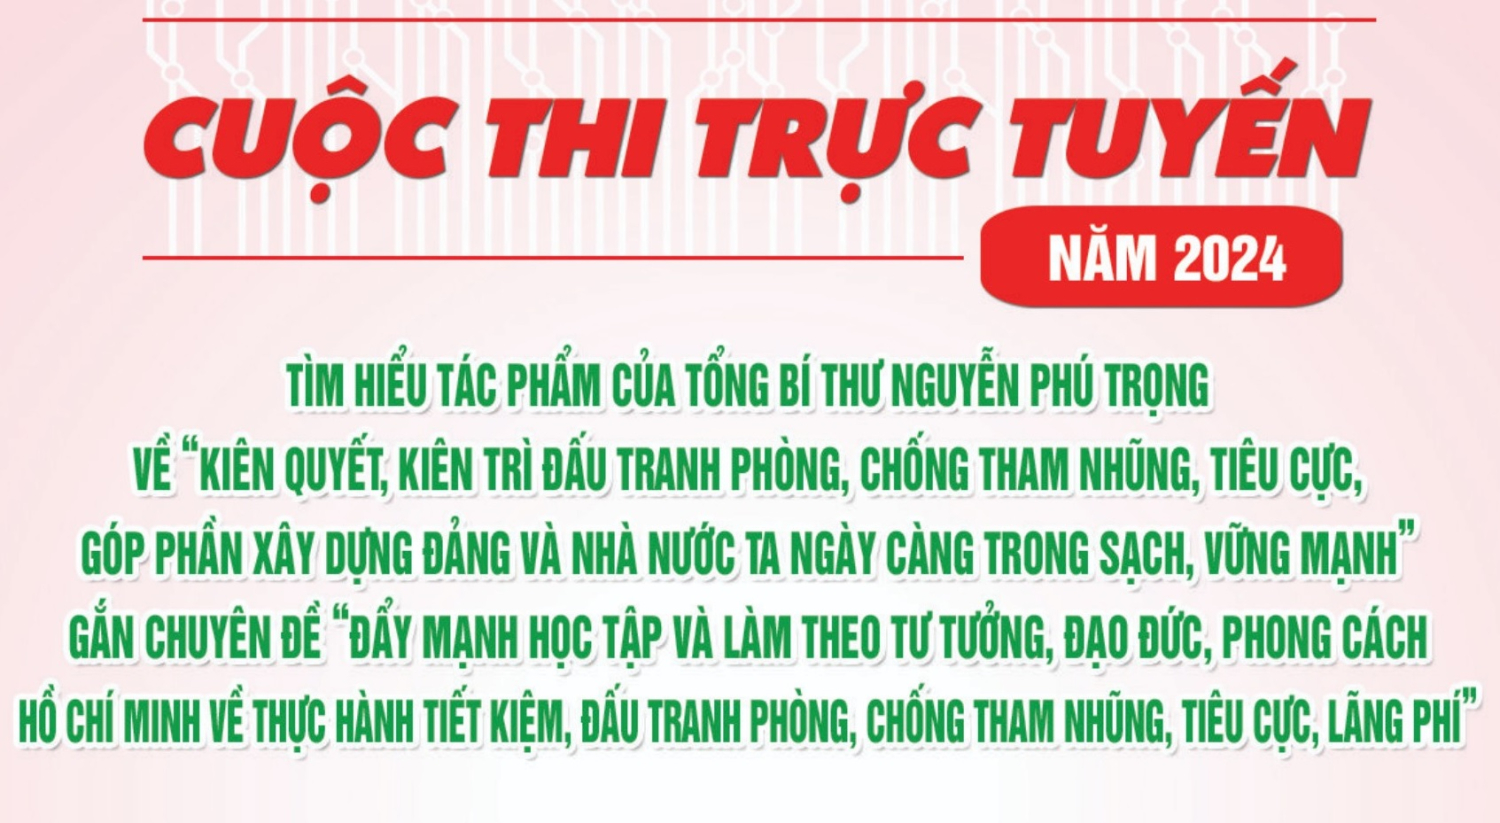 Cuộc thi trực tuyến tìm hiểu Tác phẩm của Tổng Bí thư Nguyễn Phú Trọng